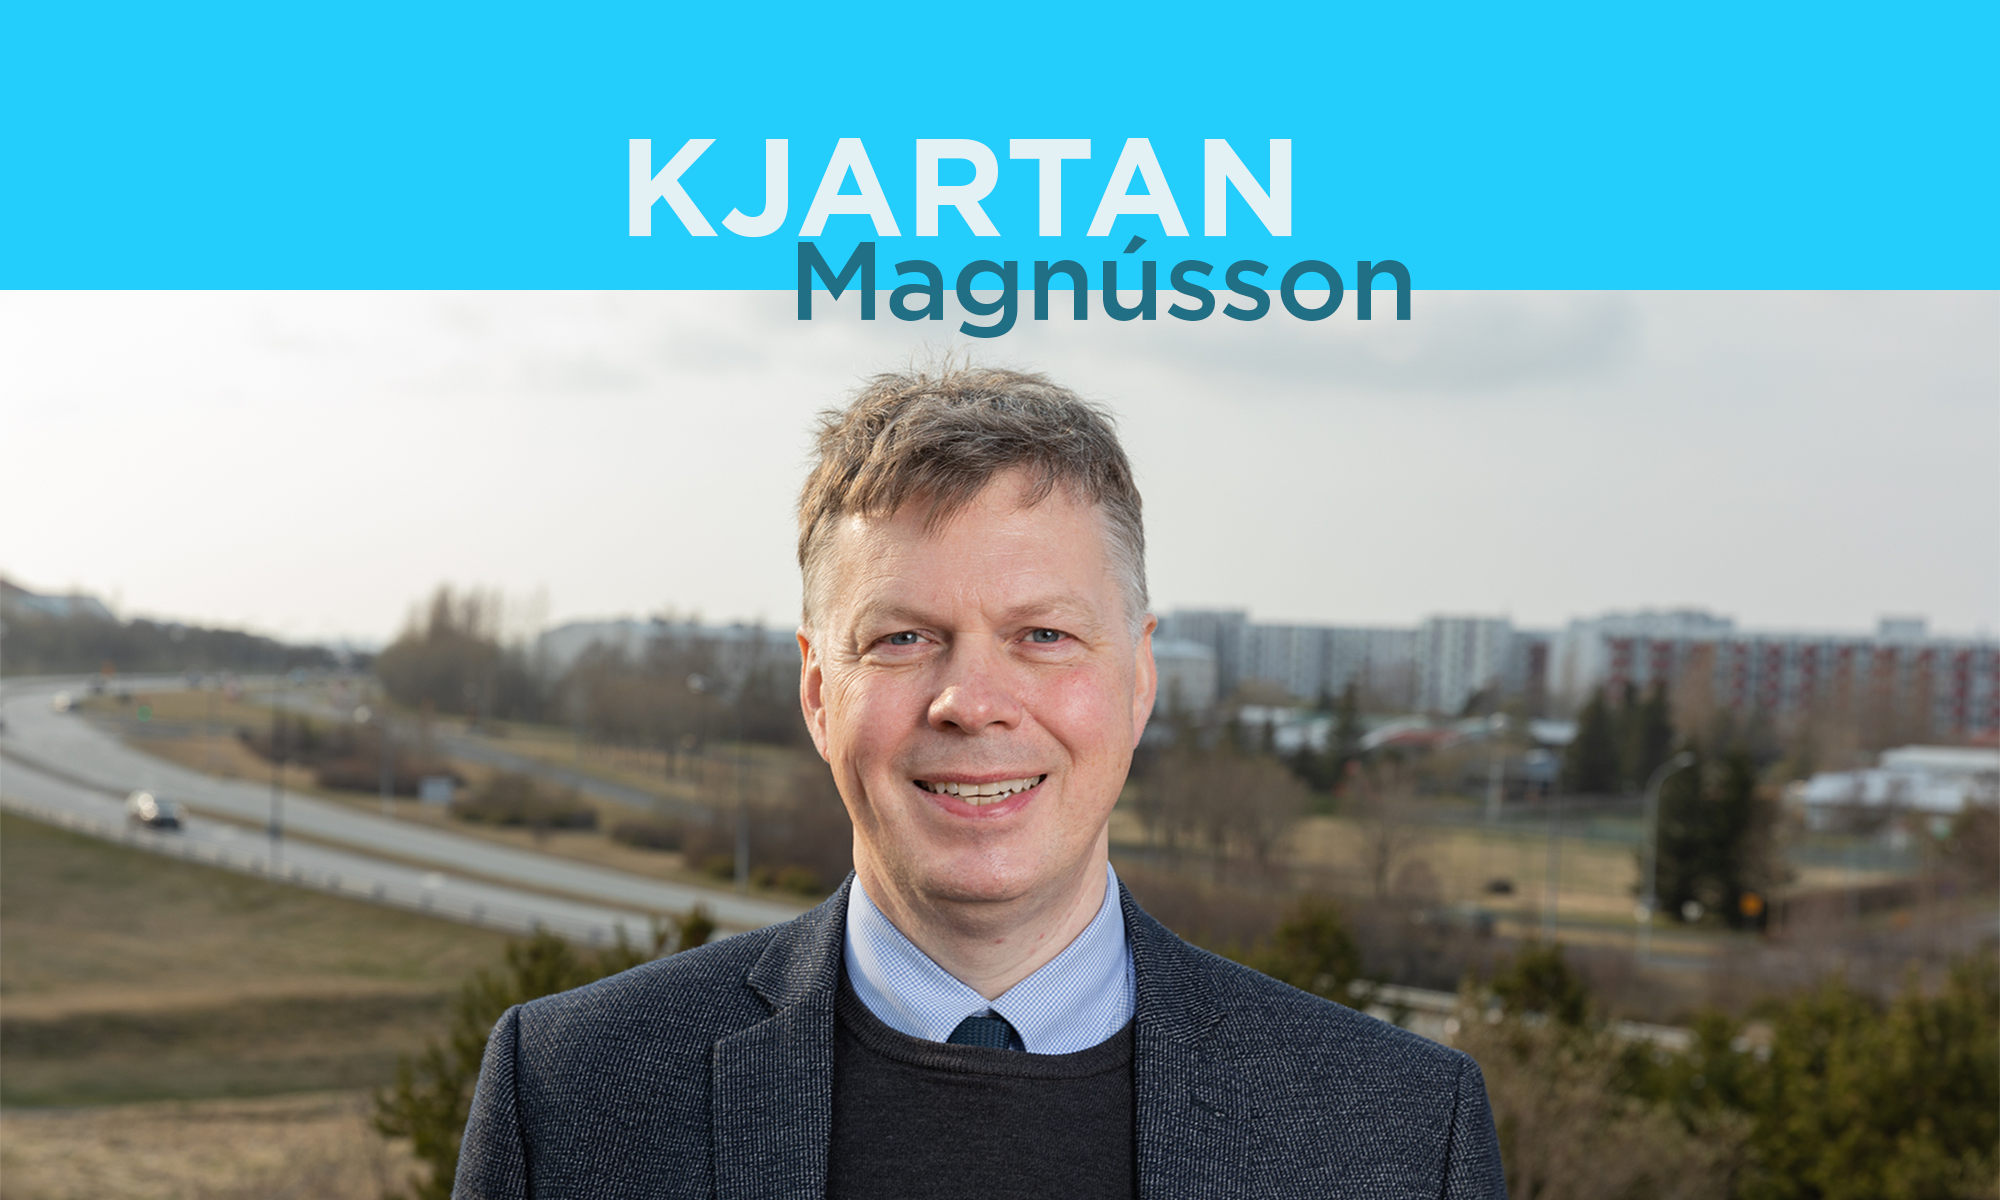 Kjartan Magnússon